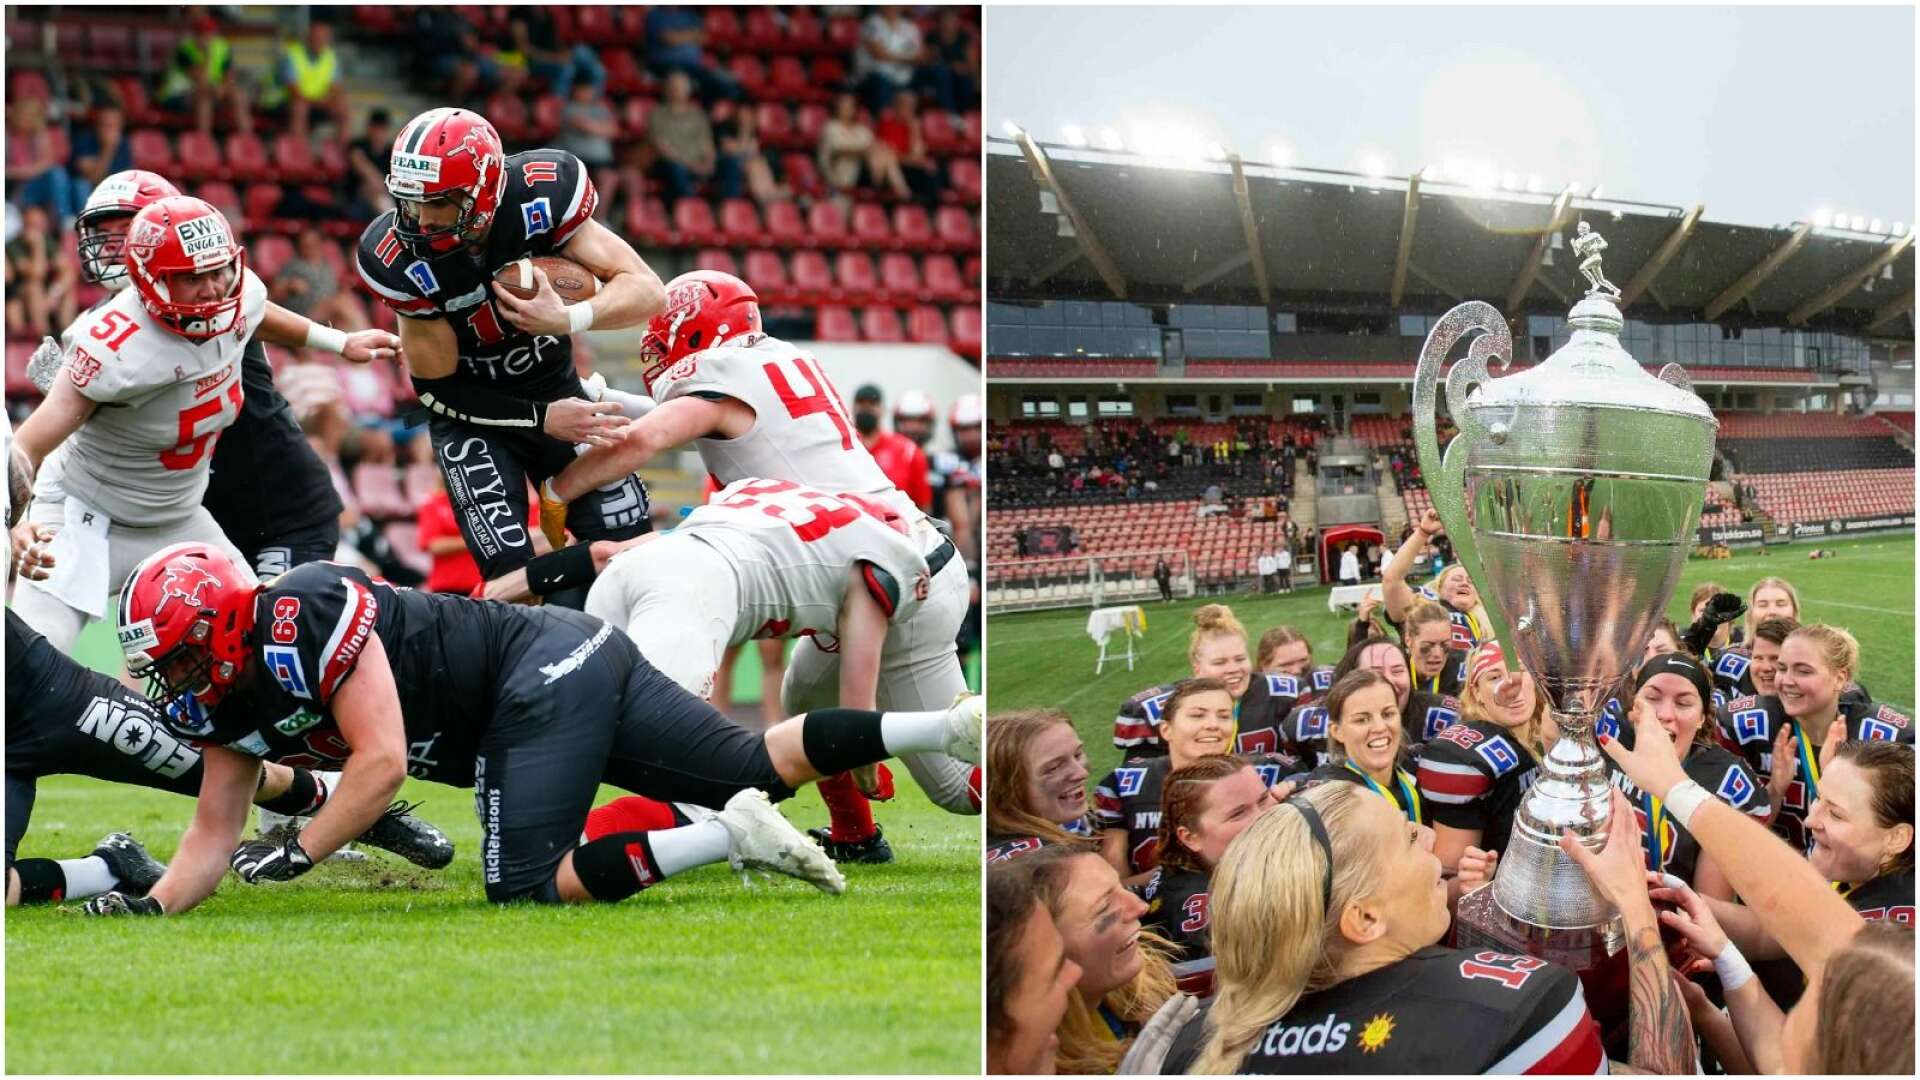 Carlstad Crusaders får sällskap av fler lag i serien säsongen 2022, både på herr- och damsidan. 